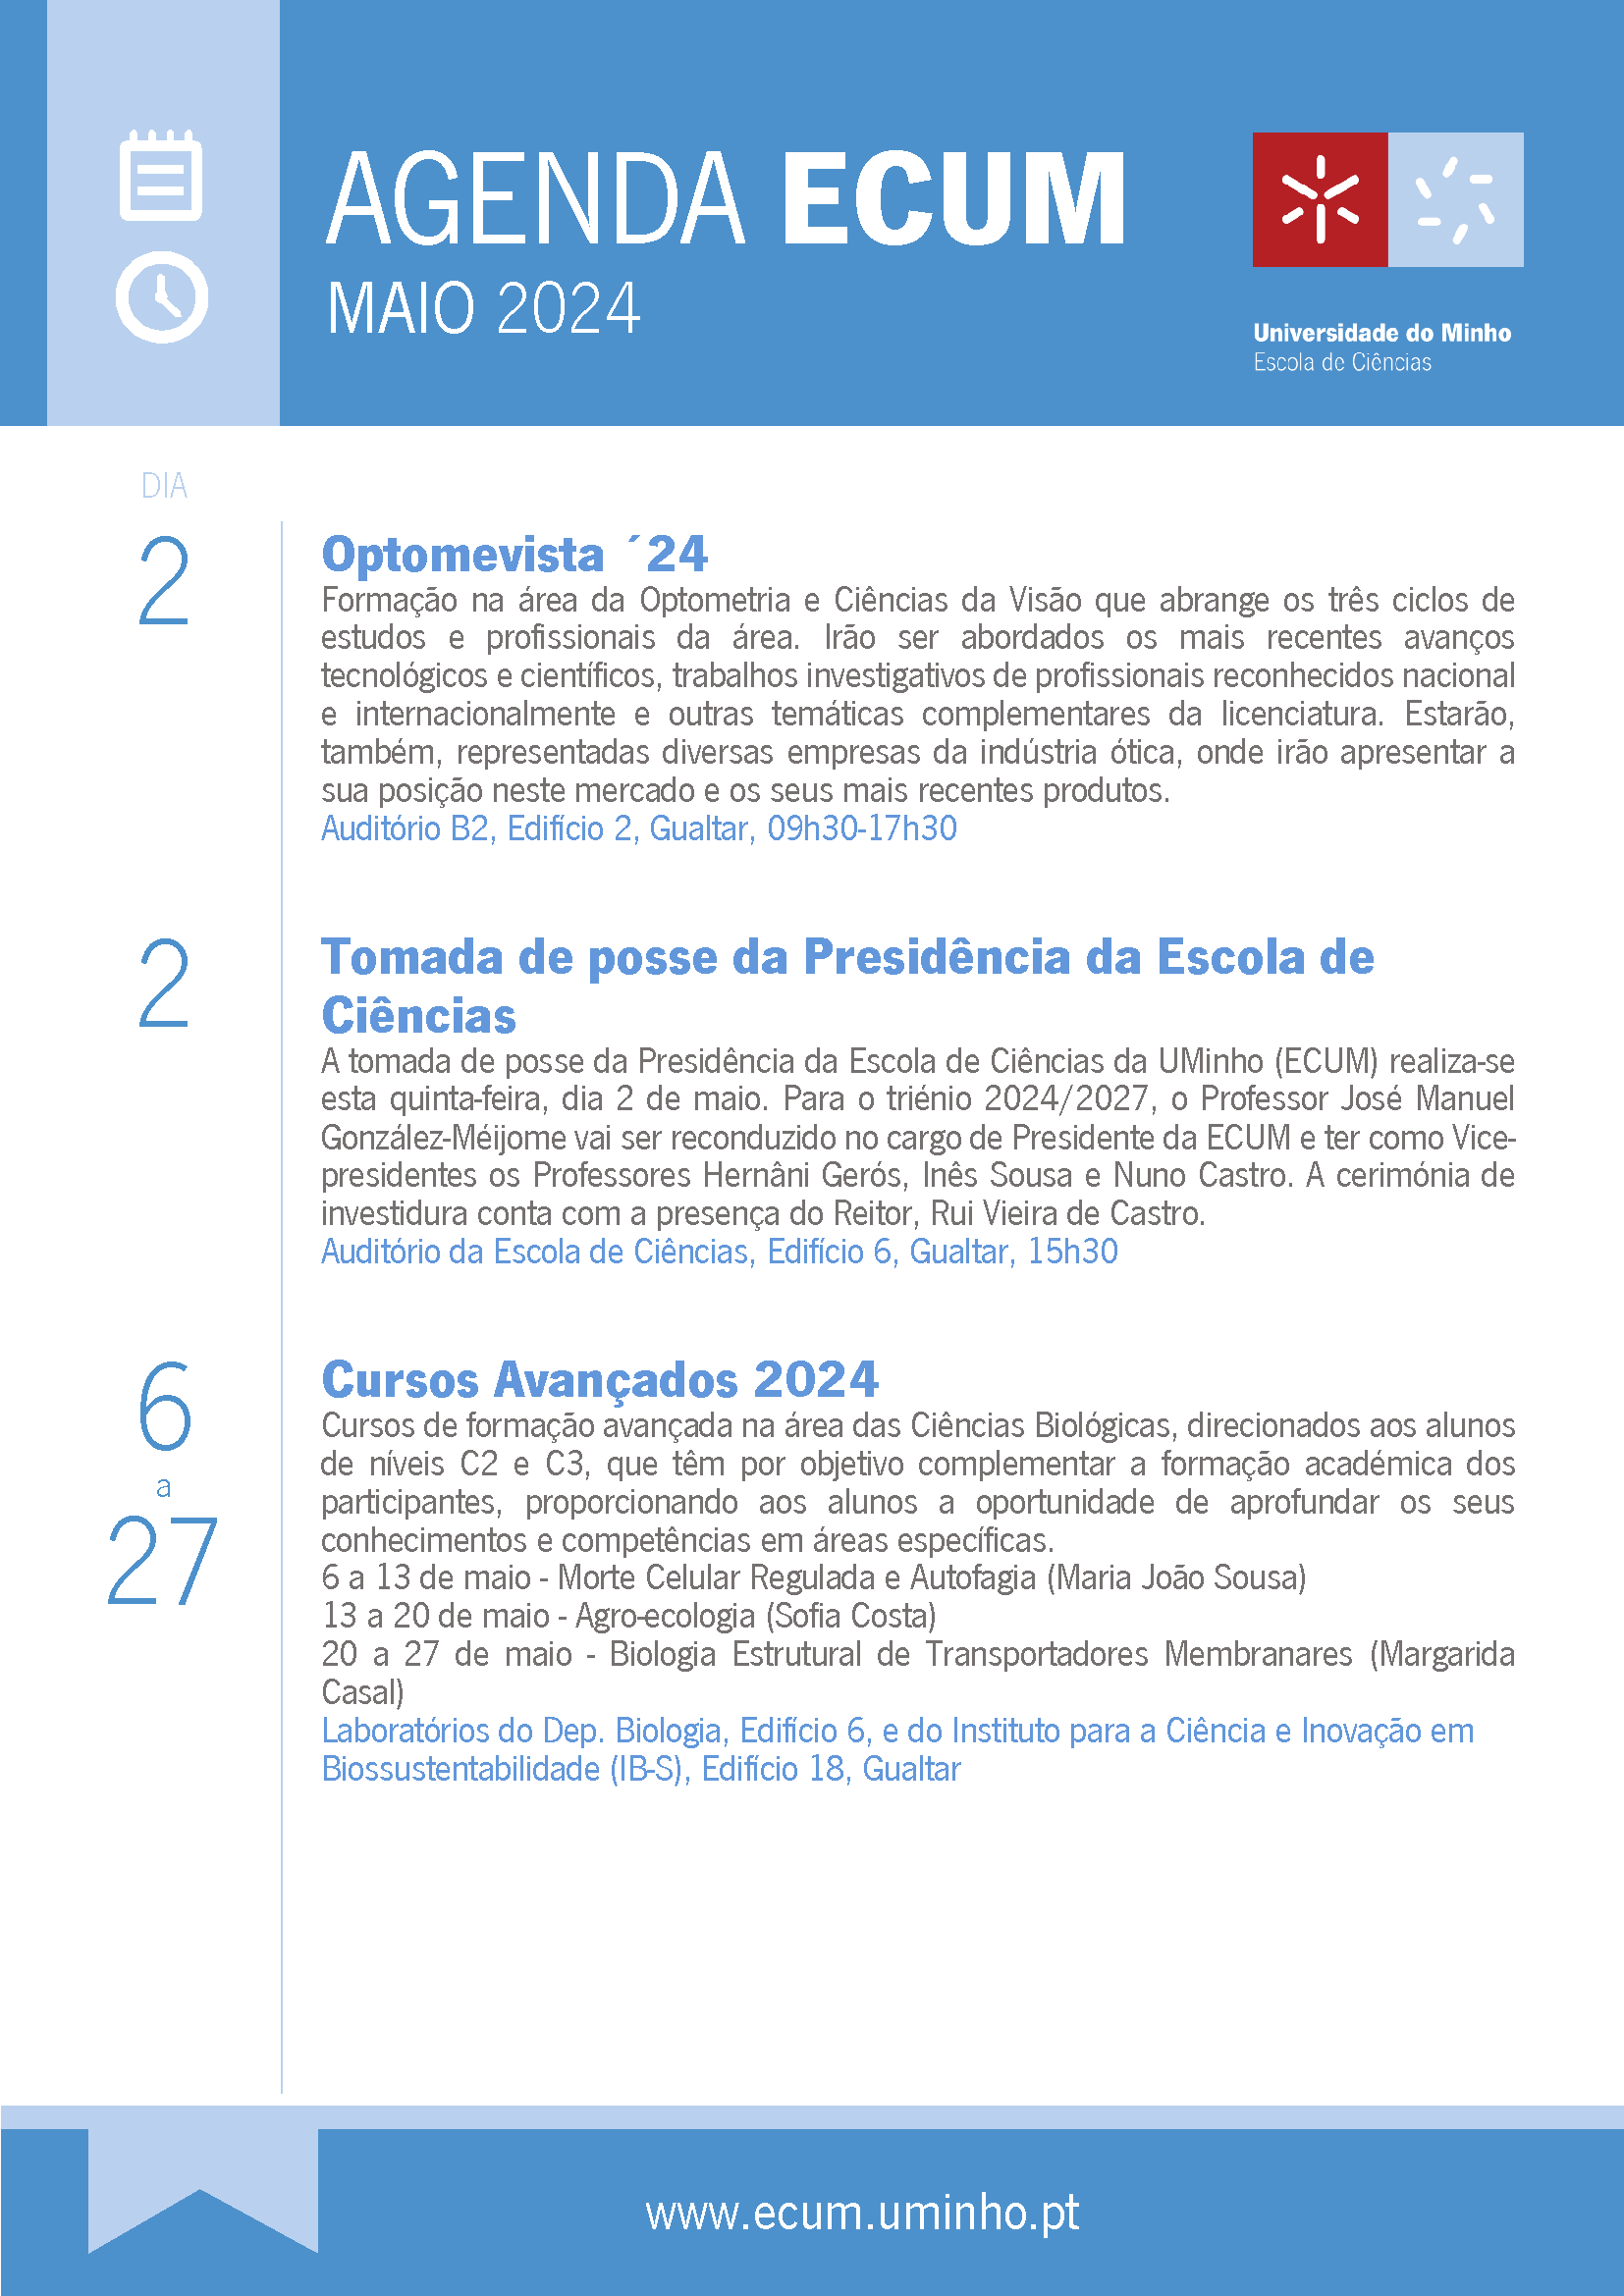 Agenda ECUM - maio 2024_Página_1.png